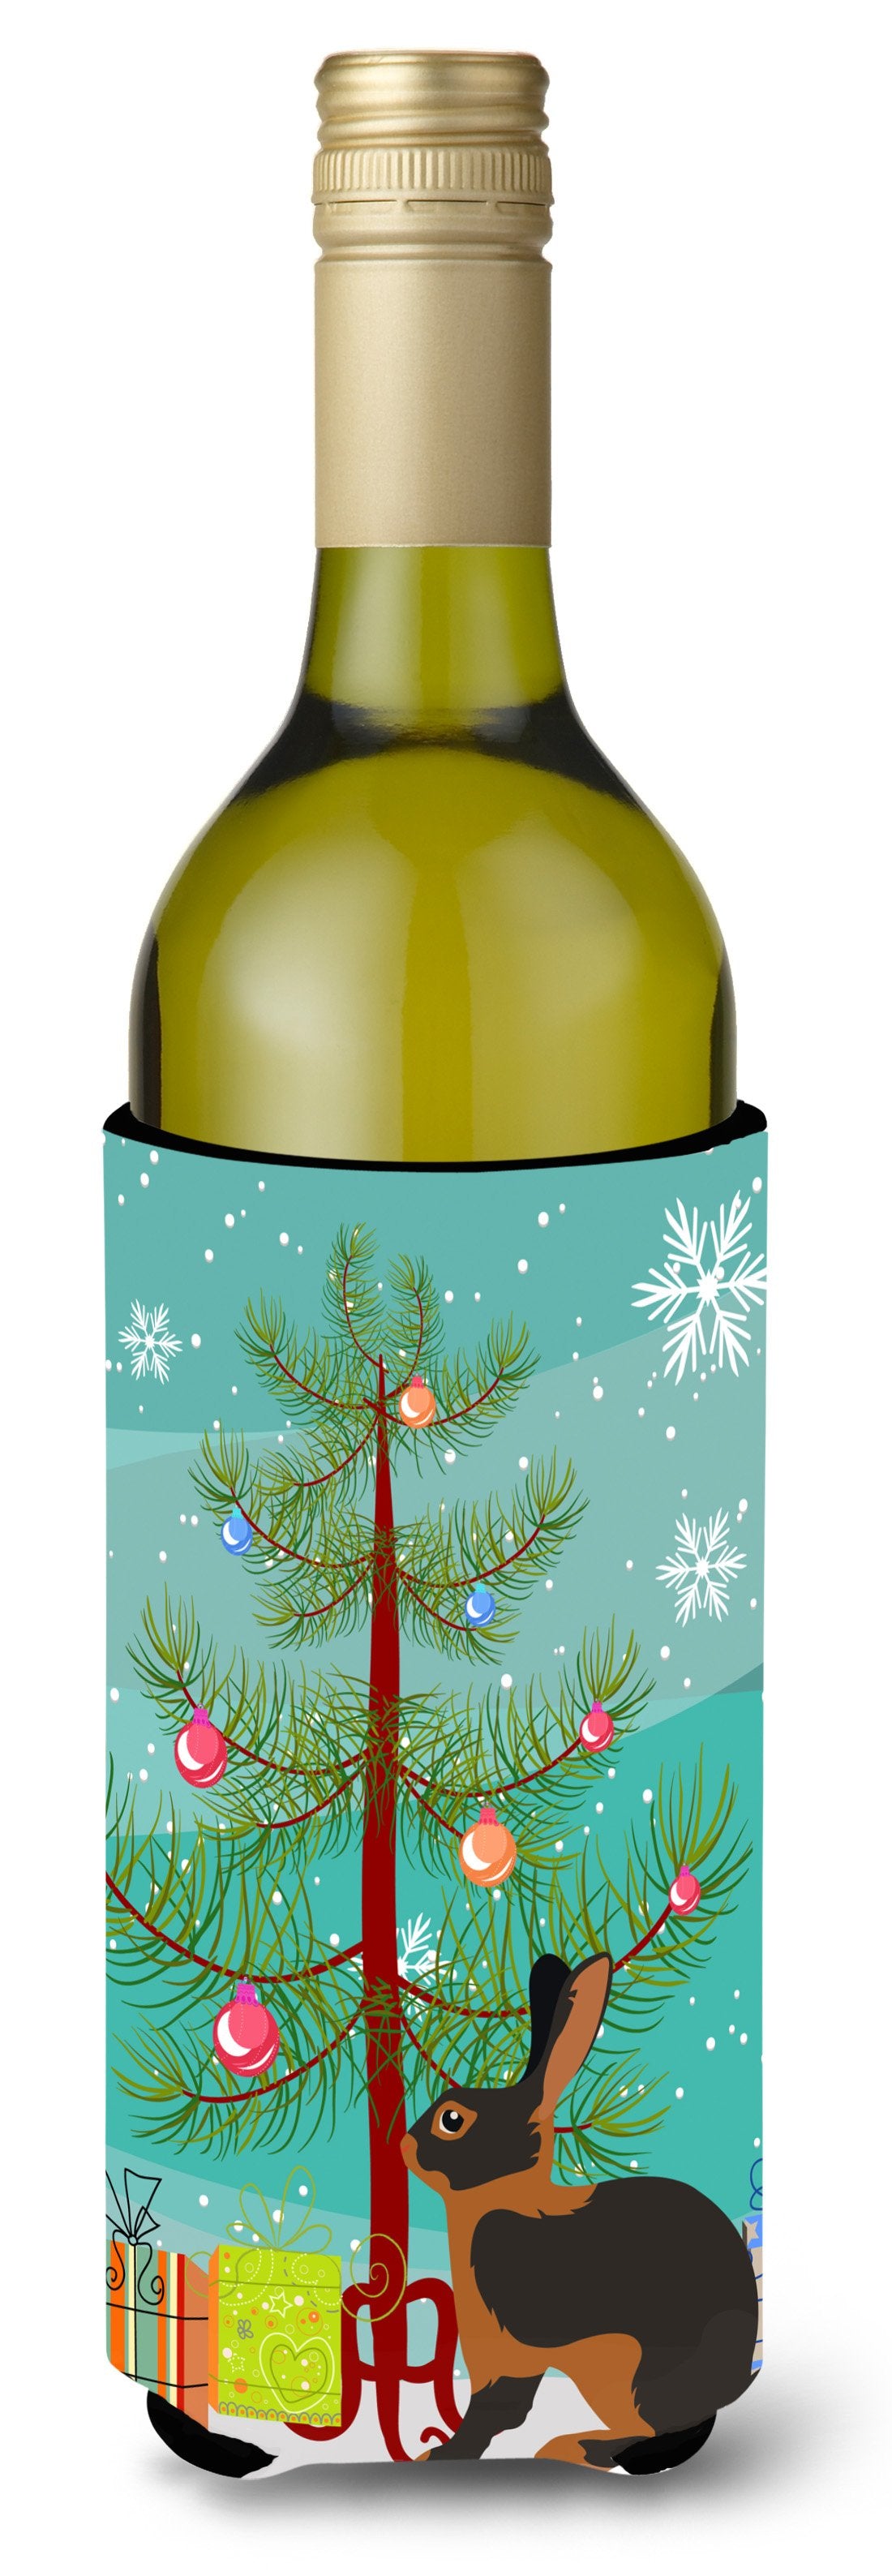 Tan Rabbit Christmas Wine Bottle Beverge Insulator Hugger BB9330LITERK by Caroline's Treasures